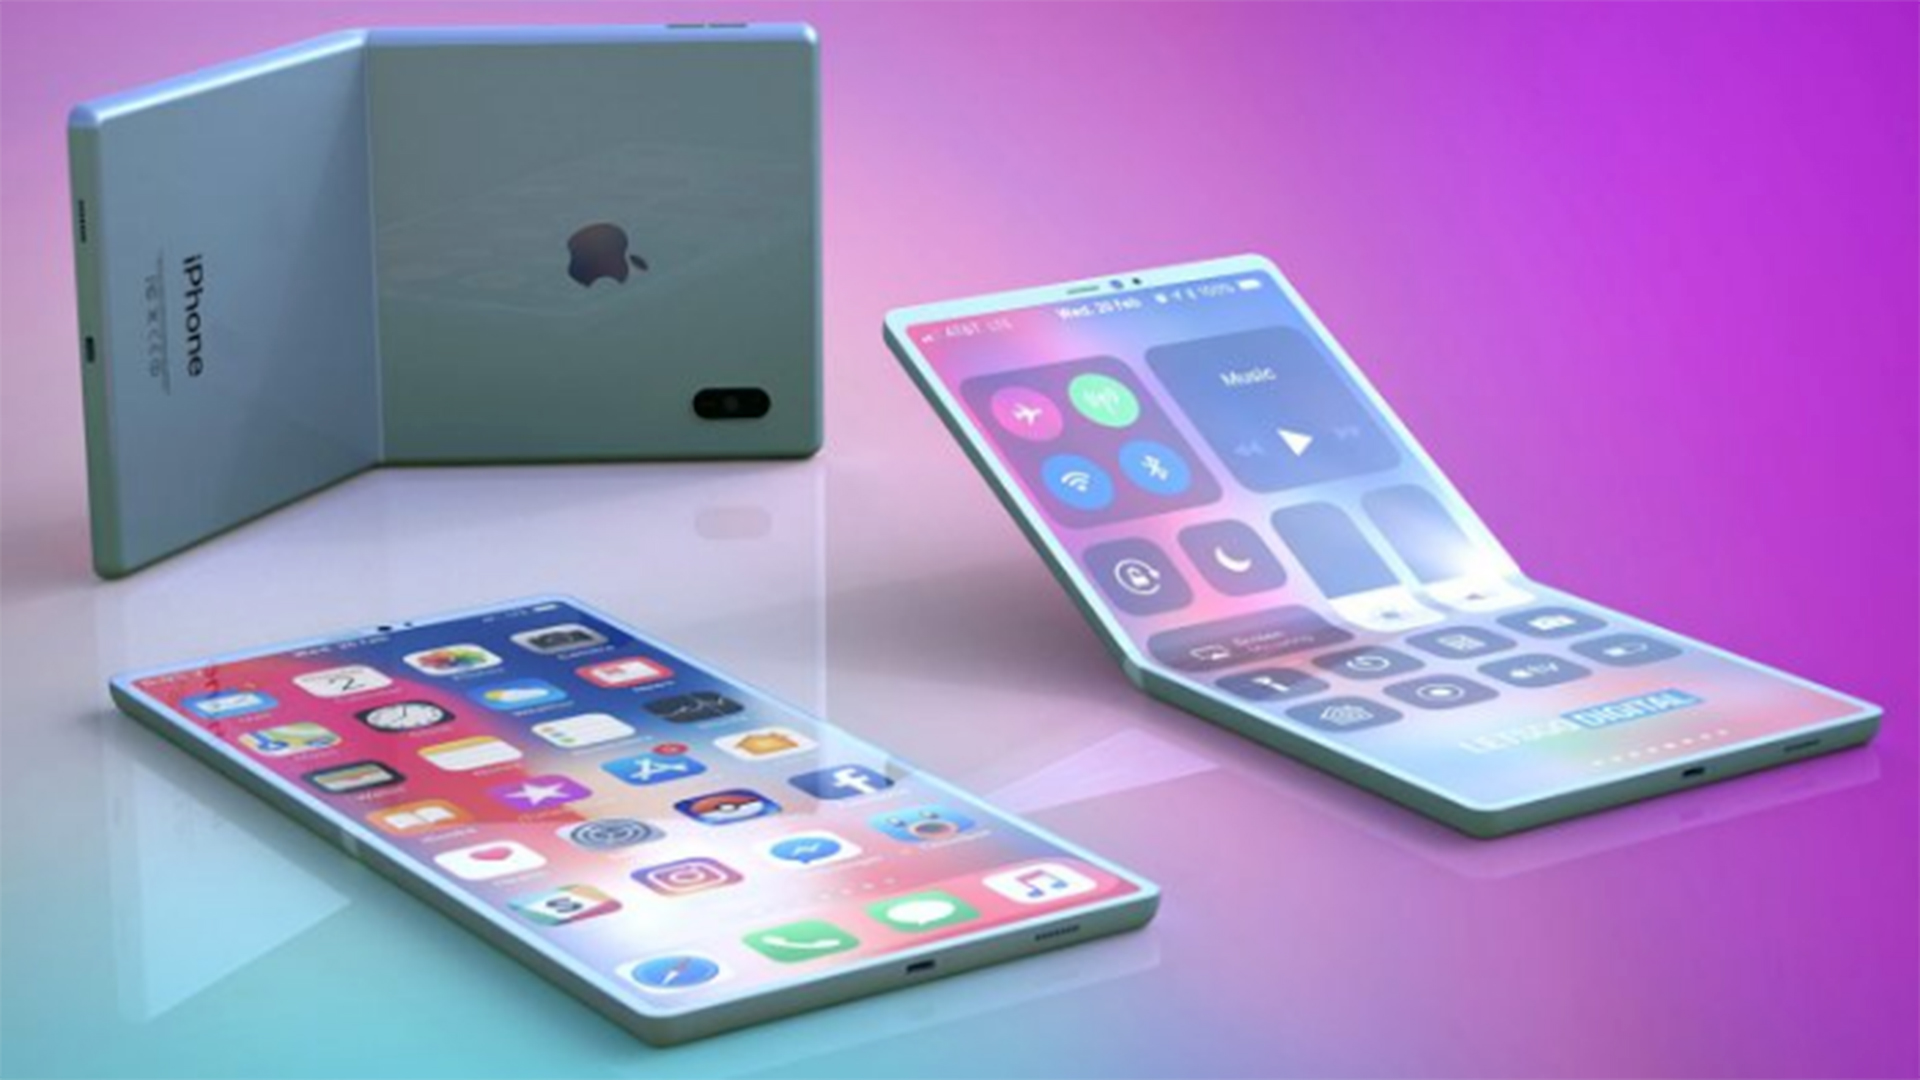 Apple đã gửi mẫu iPhone màn hình gập đến Foxconn để test thử thumb